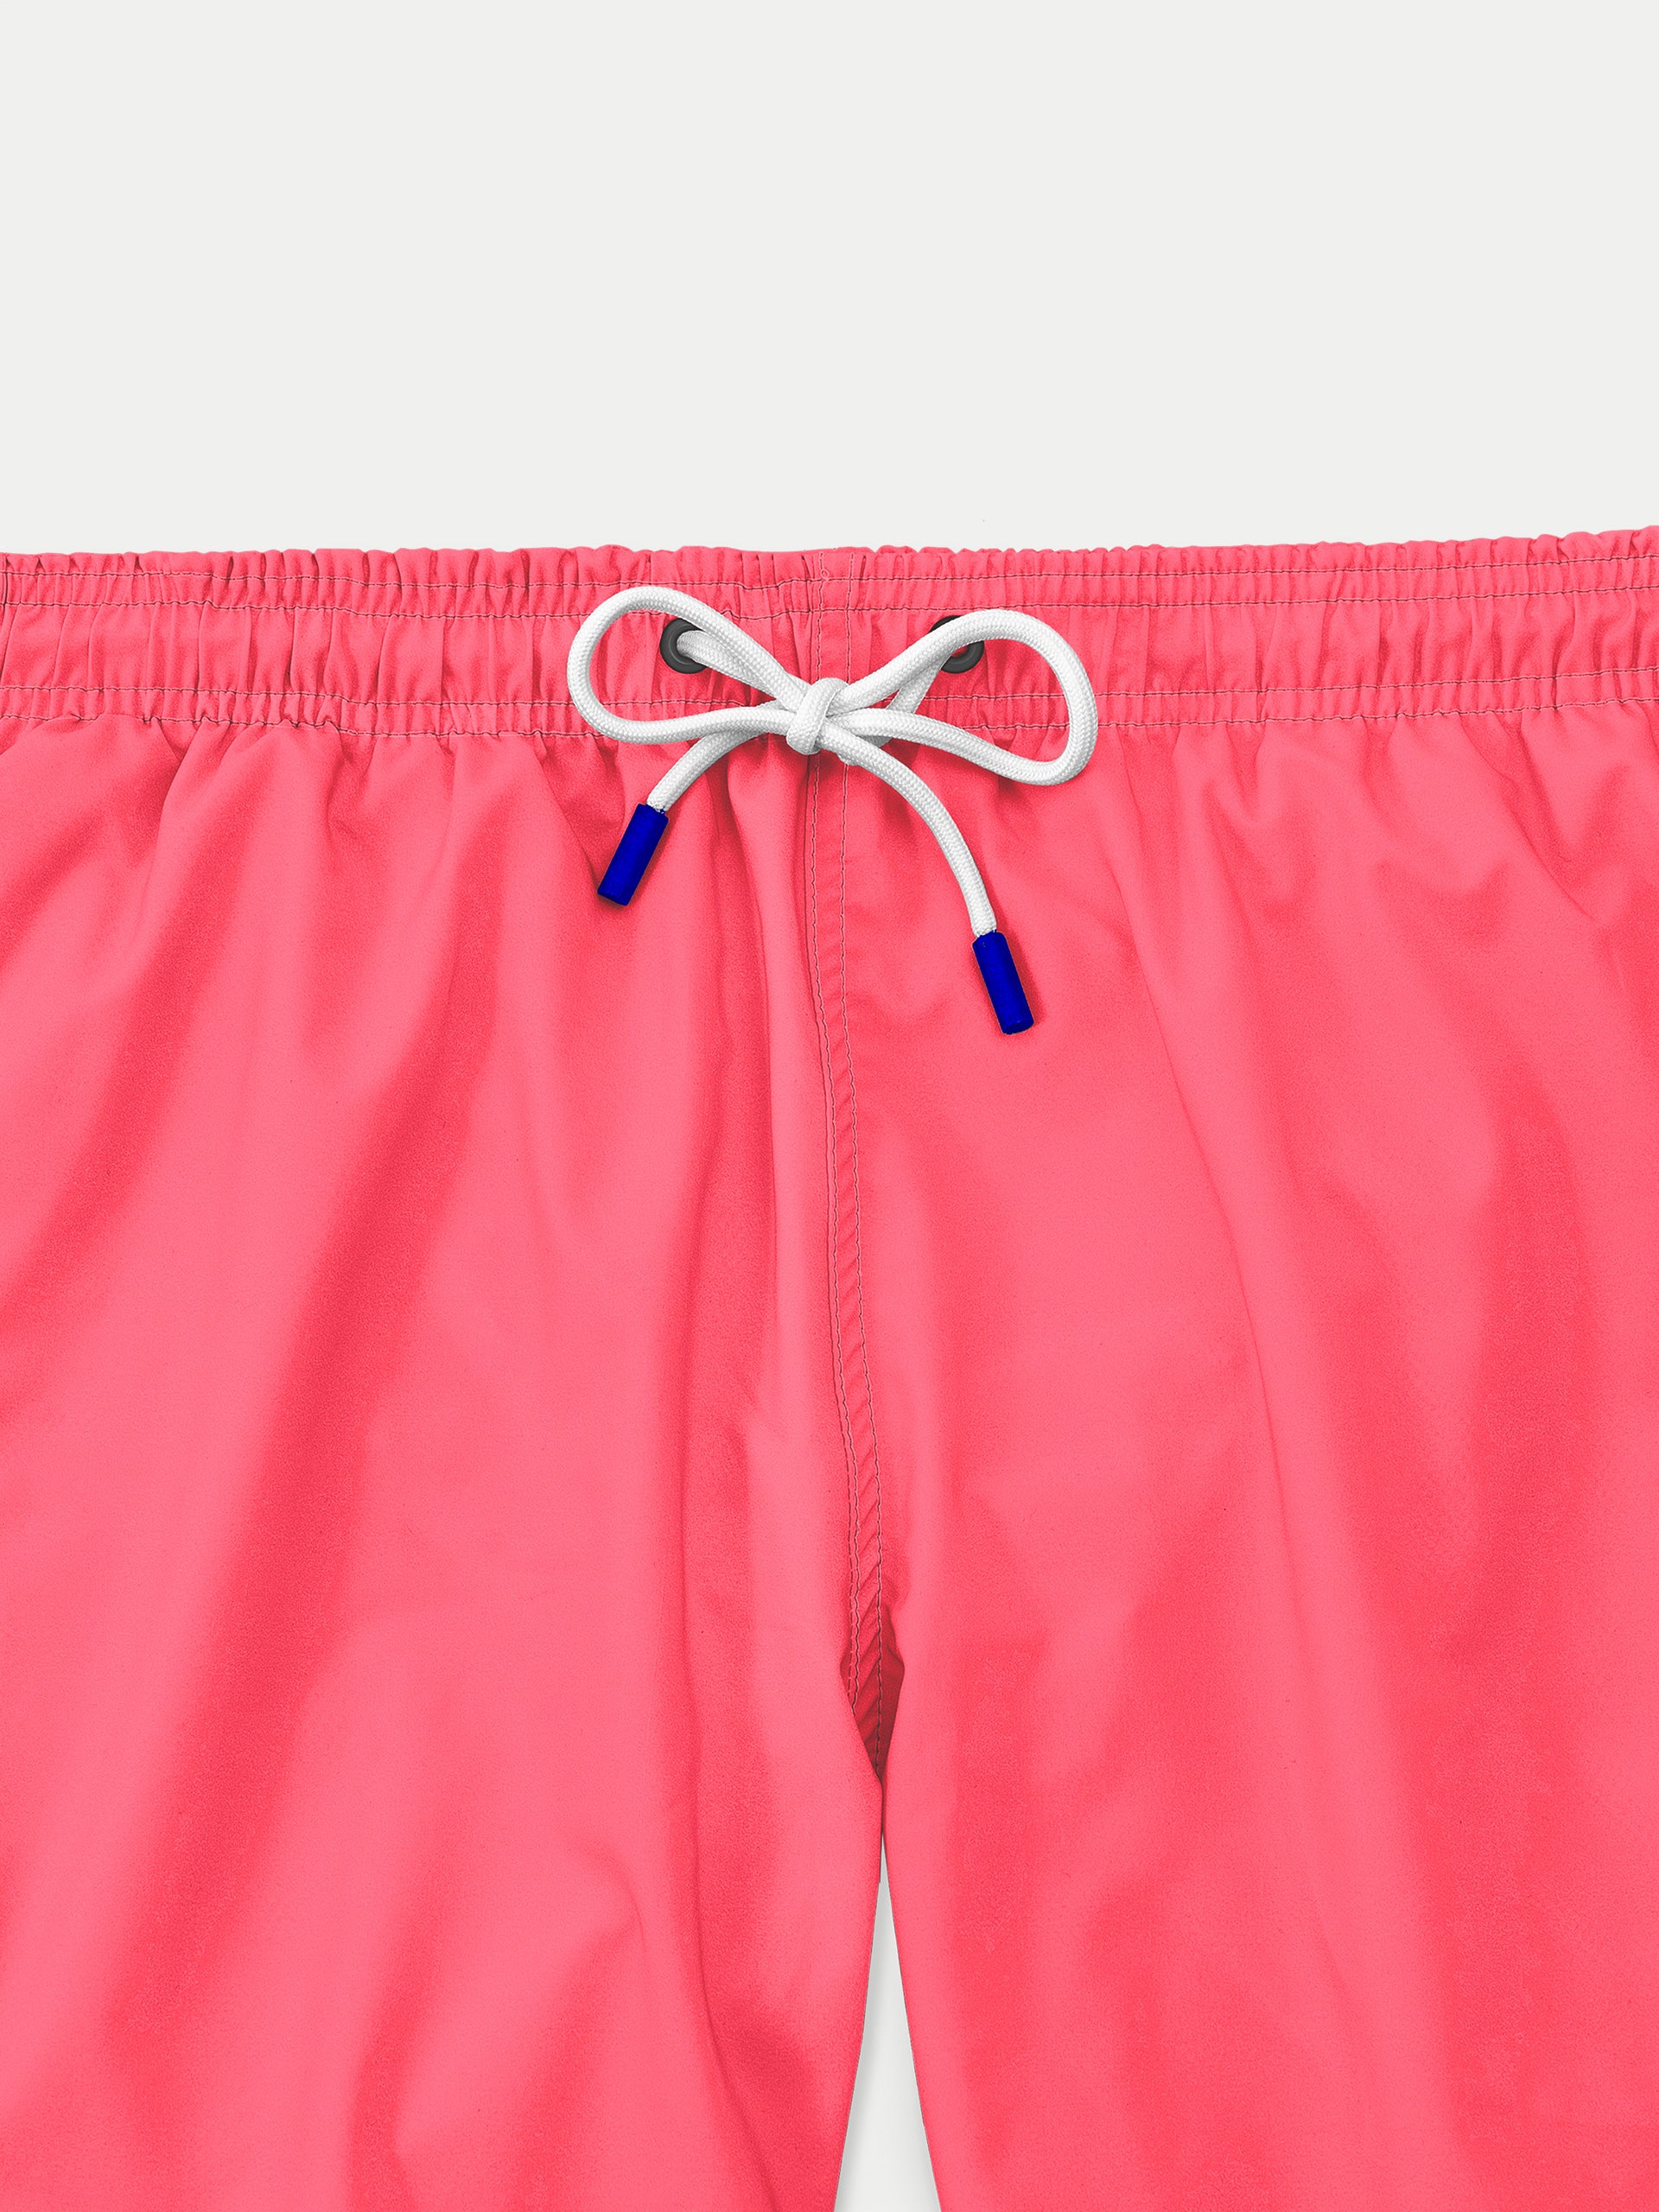 ‘Basic Neon Pink’ Swim Trunks for Men by 98 Coast Av.